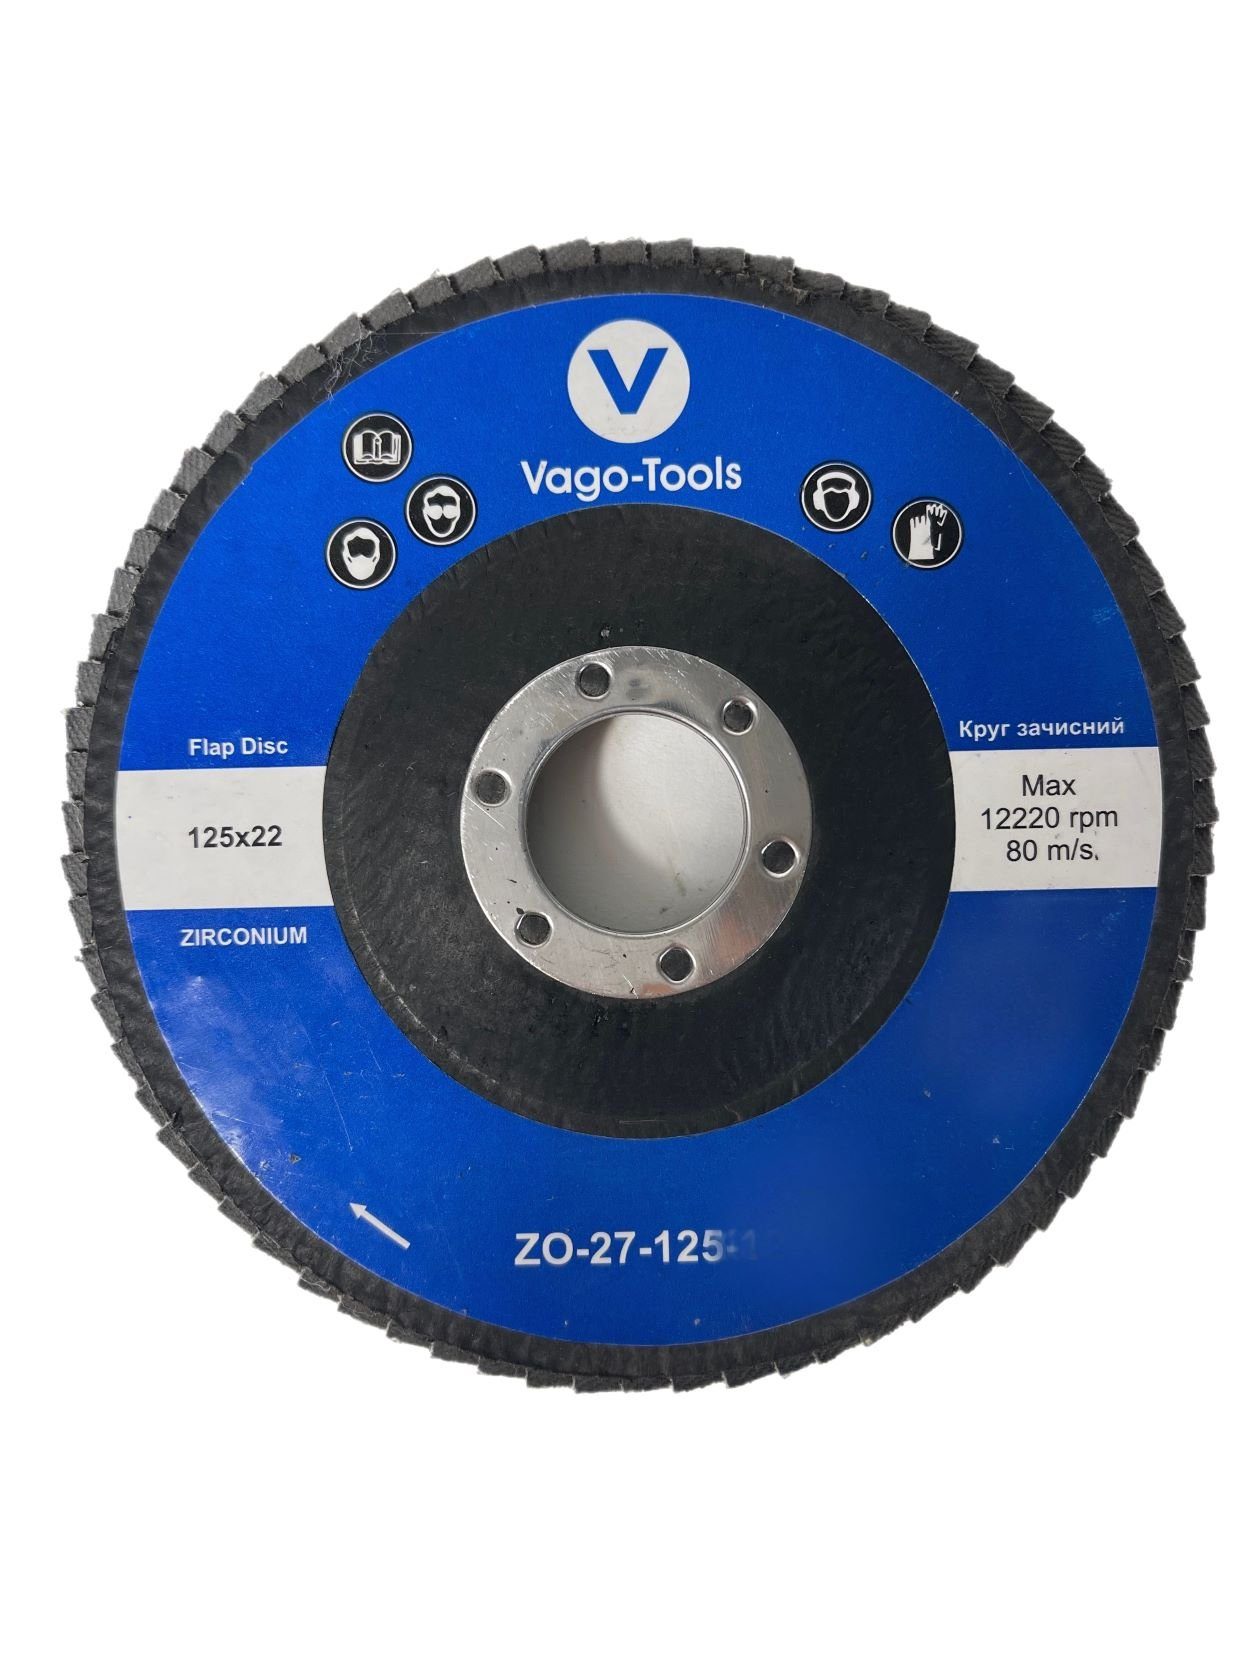 VaGo-Tools Schleifscheibe Fächerschleifscheiben 125mm P40 flach Blau 50x, (Packung)